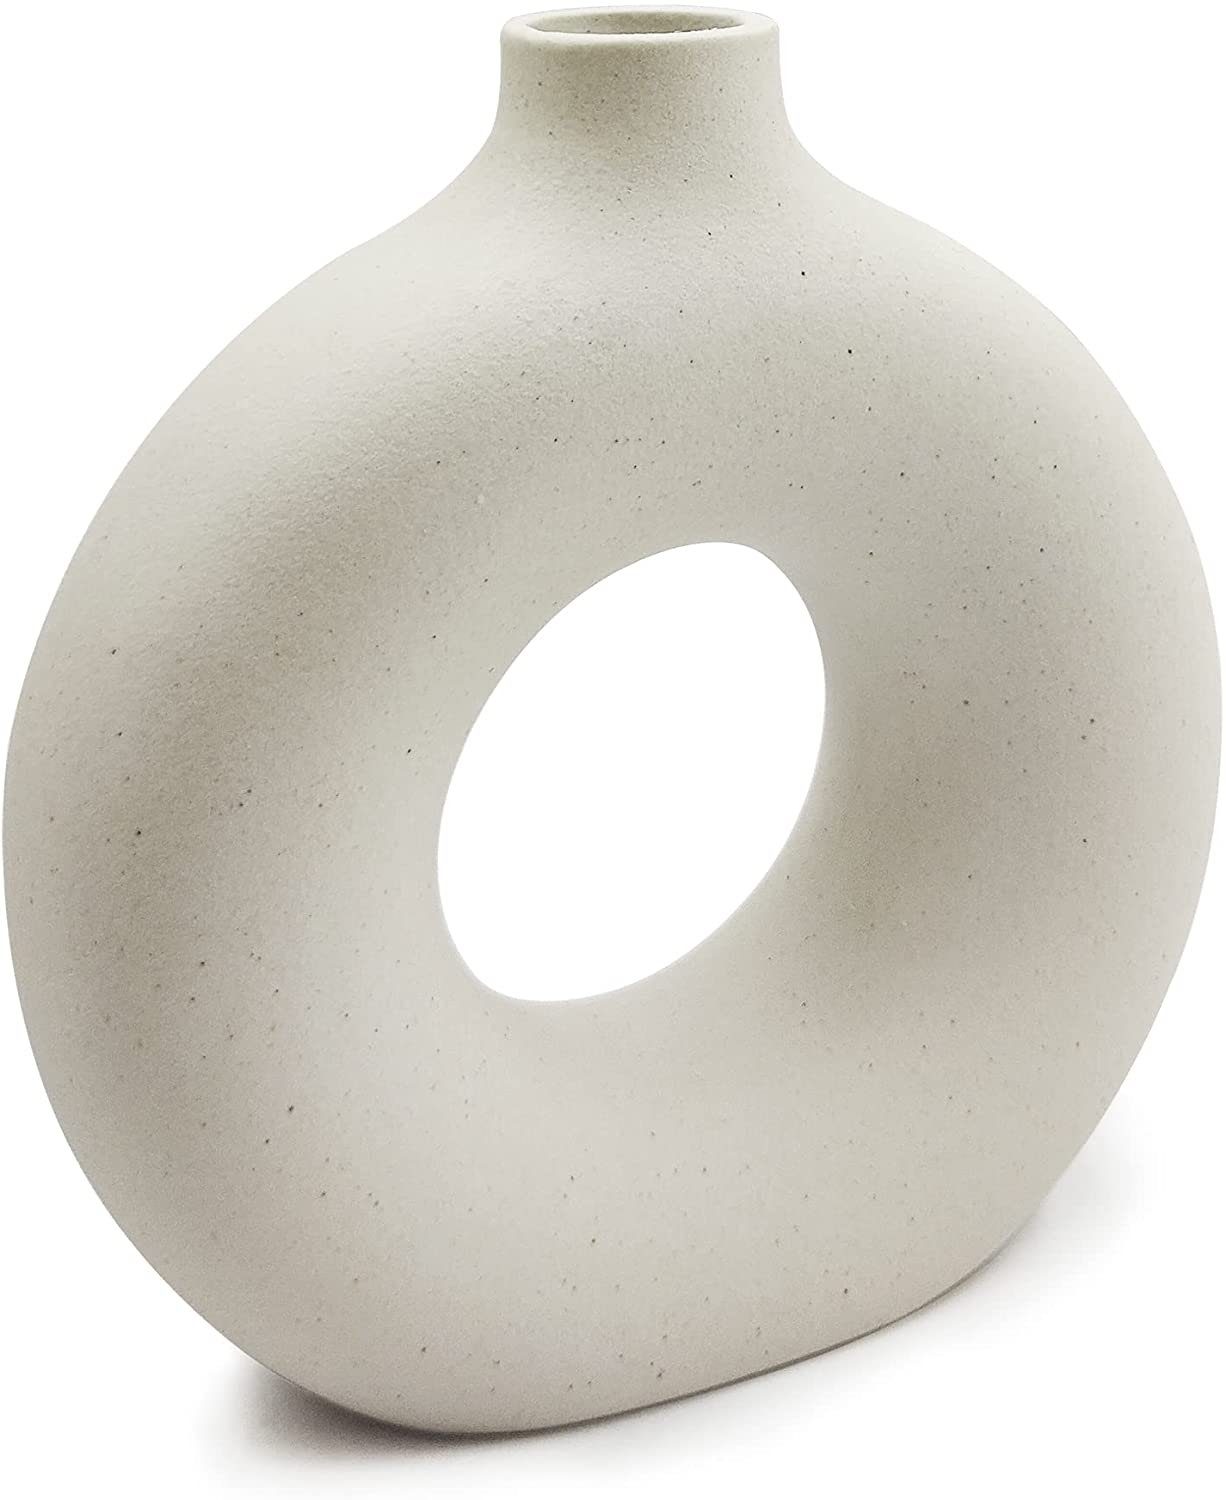 Housruse Dekovase »Keramik vase beige Moderne deko Kunst Vase Runde Form  Vasen Abstraktion Blumenvase Dekoration Blumenvase für Home Office Dekor«  online kaufen | OTTO